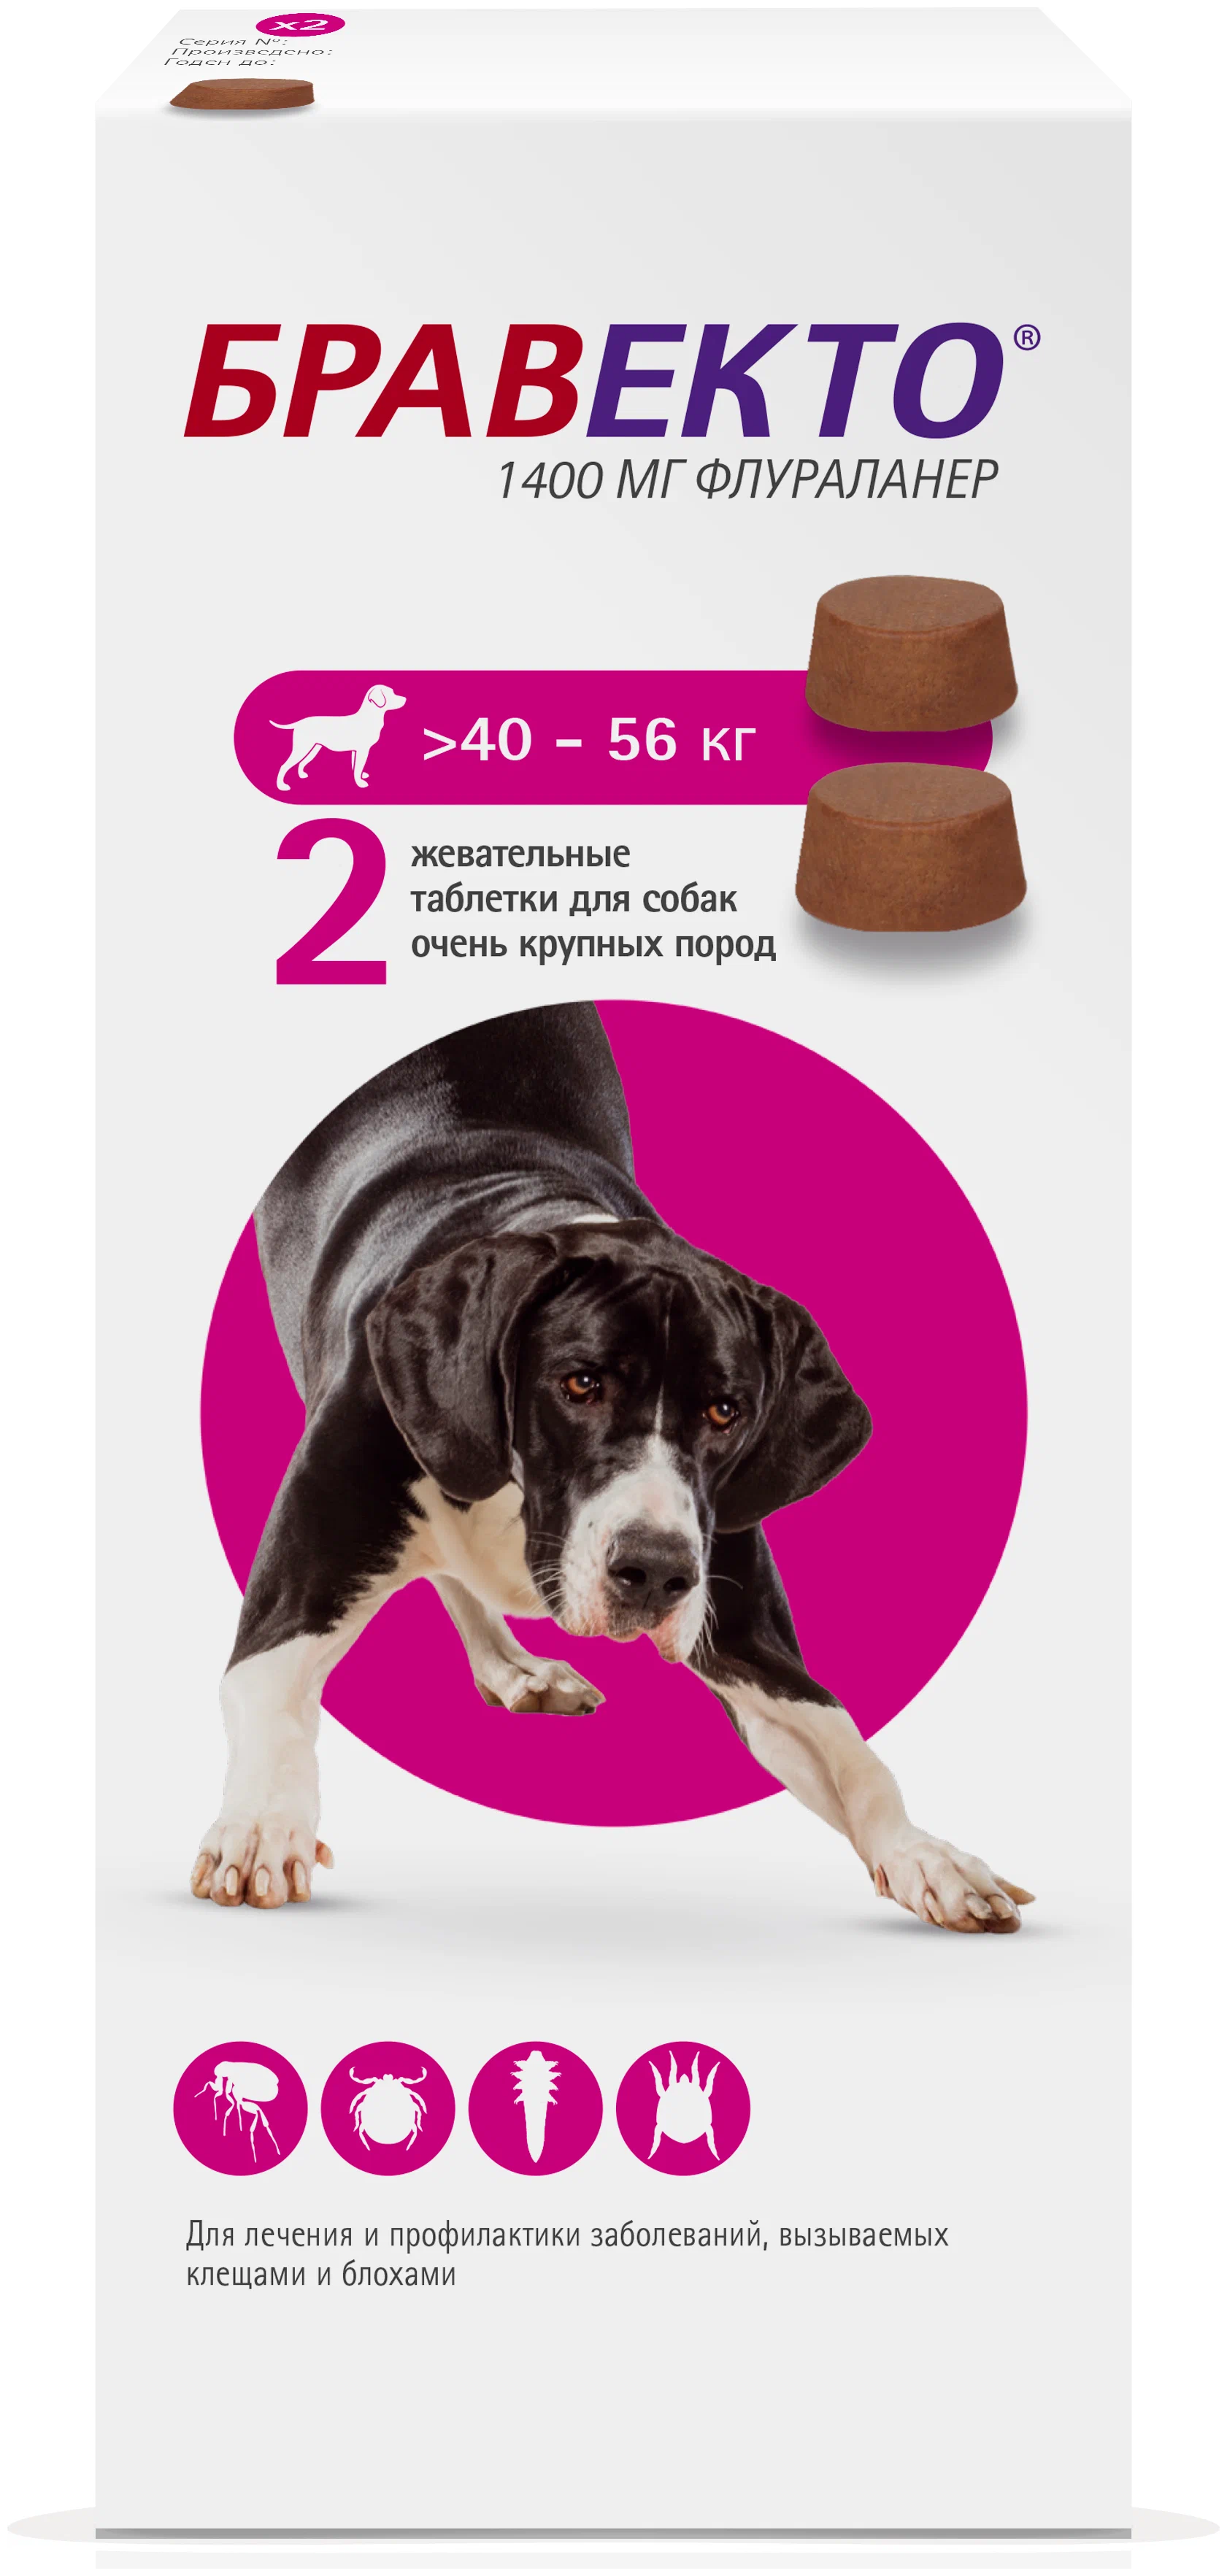 Таблетка бравекто для собак. Бравекто 1400мг таблетка инсектоакарицидная д/собак 40-56кг. Бравекто таблетки для собак 40-56. Бравекто 1400 мг д/собак 40-56 кг. Бравекто для собак 40-56 2.